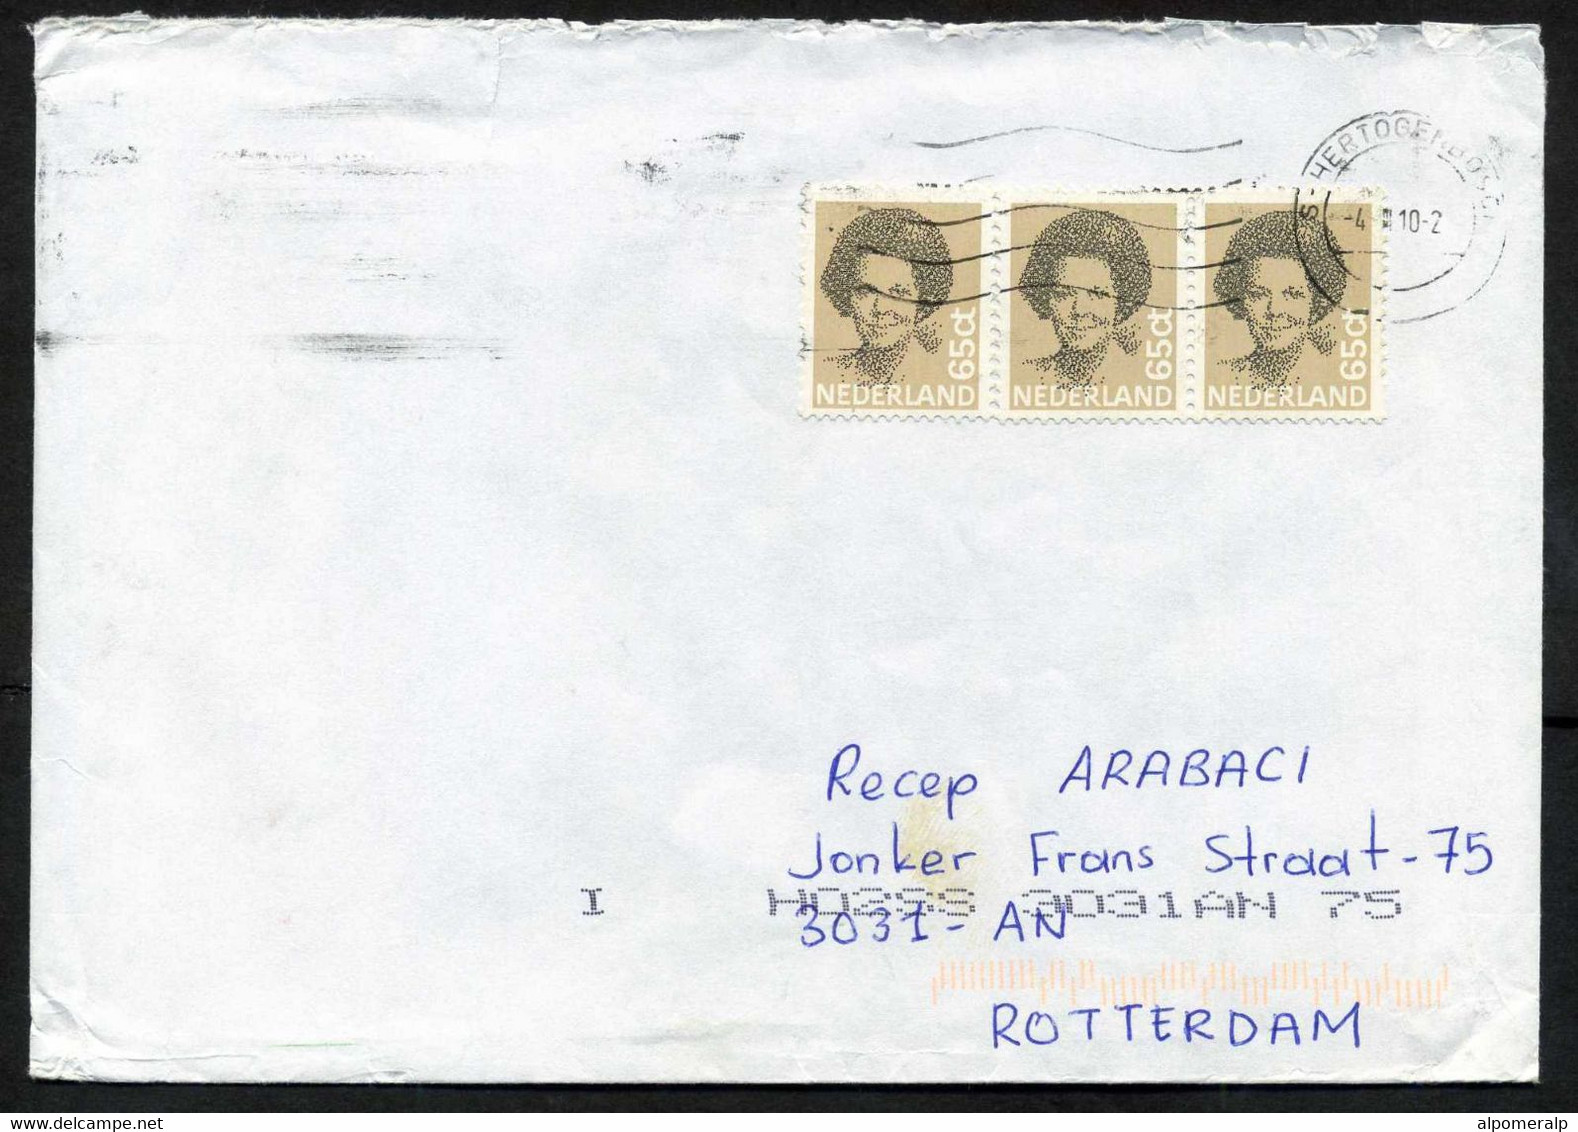 Netherlands 's-Hertogenbosch 2010 Mail Cover Used To Turkey | Mi 1197 Queen Beatrix, Type 'Struyken' - Briefe U. Dokumente